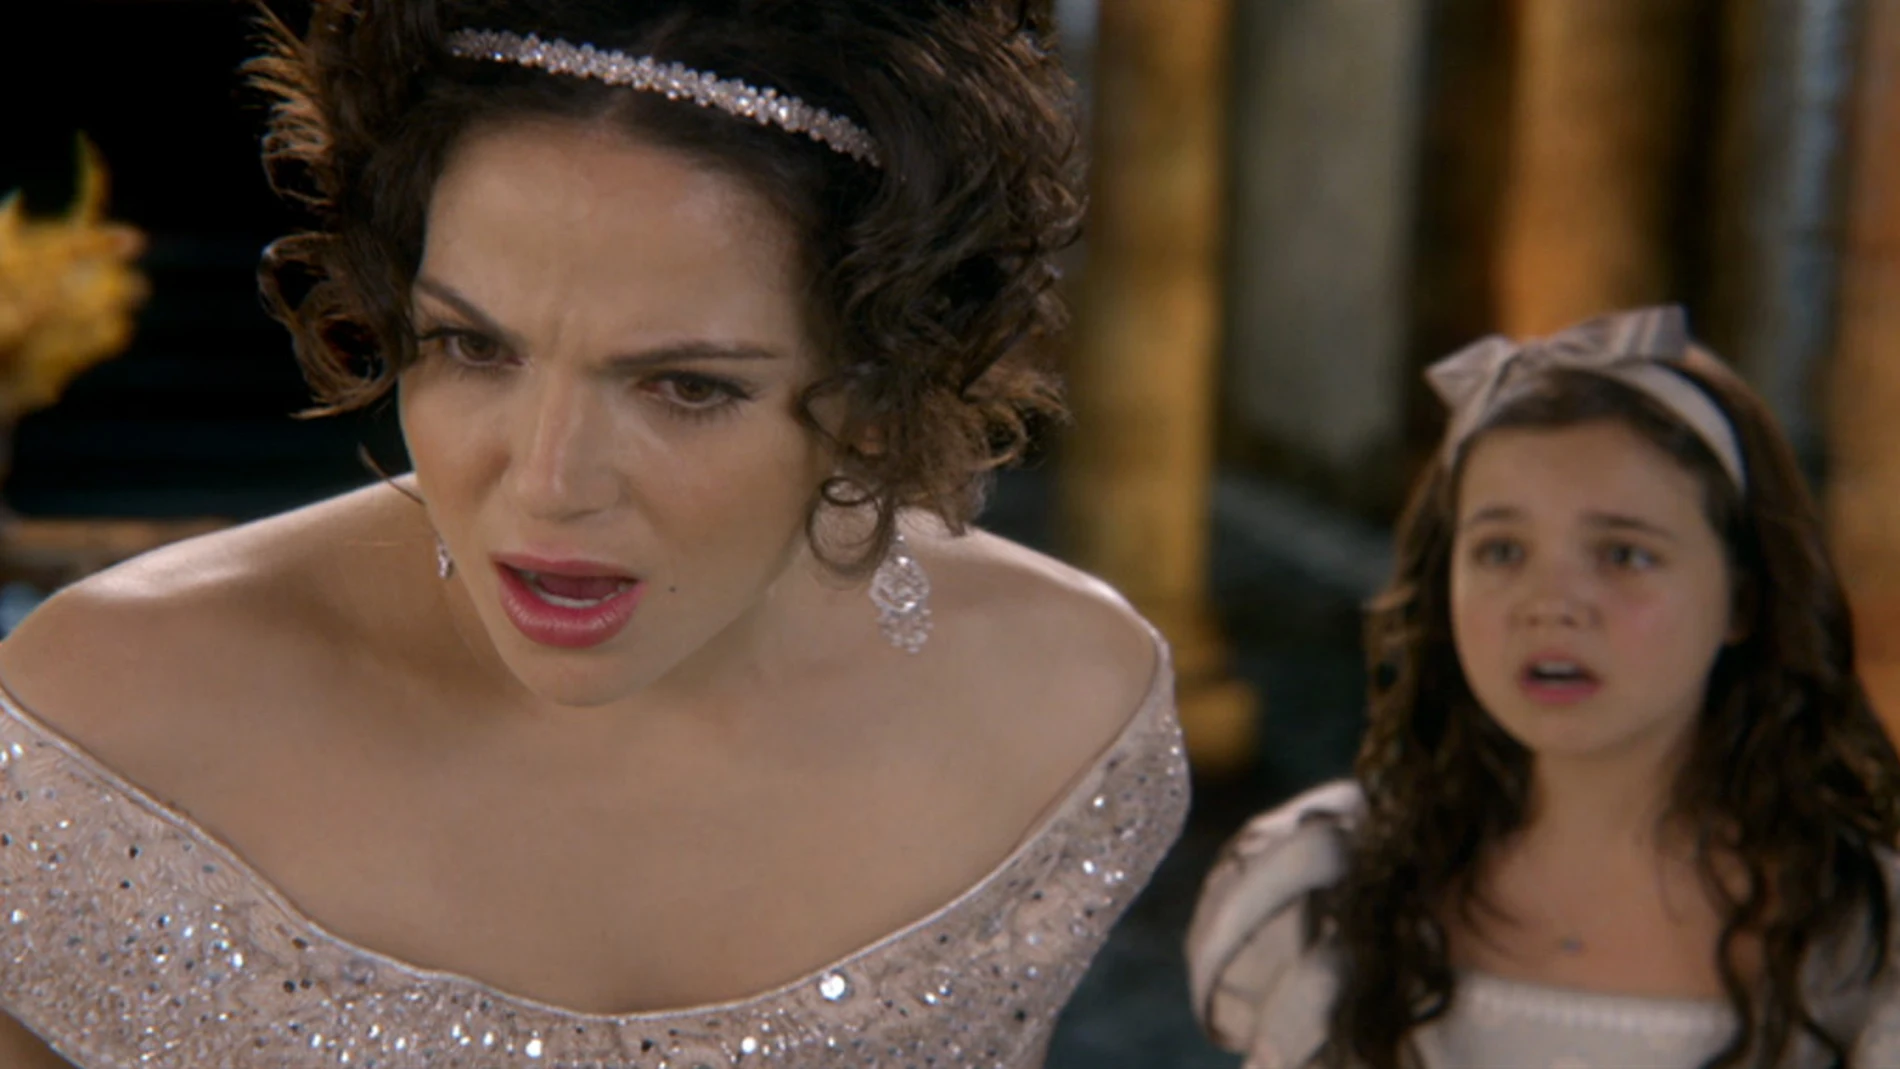 La razón por la que Regina odia a Blancanieves